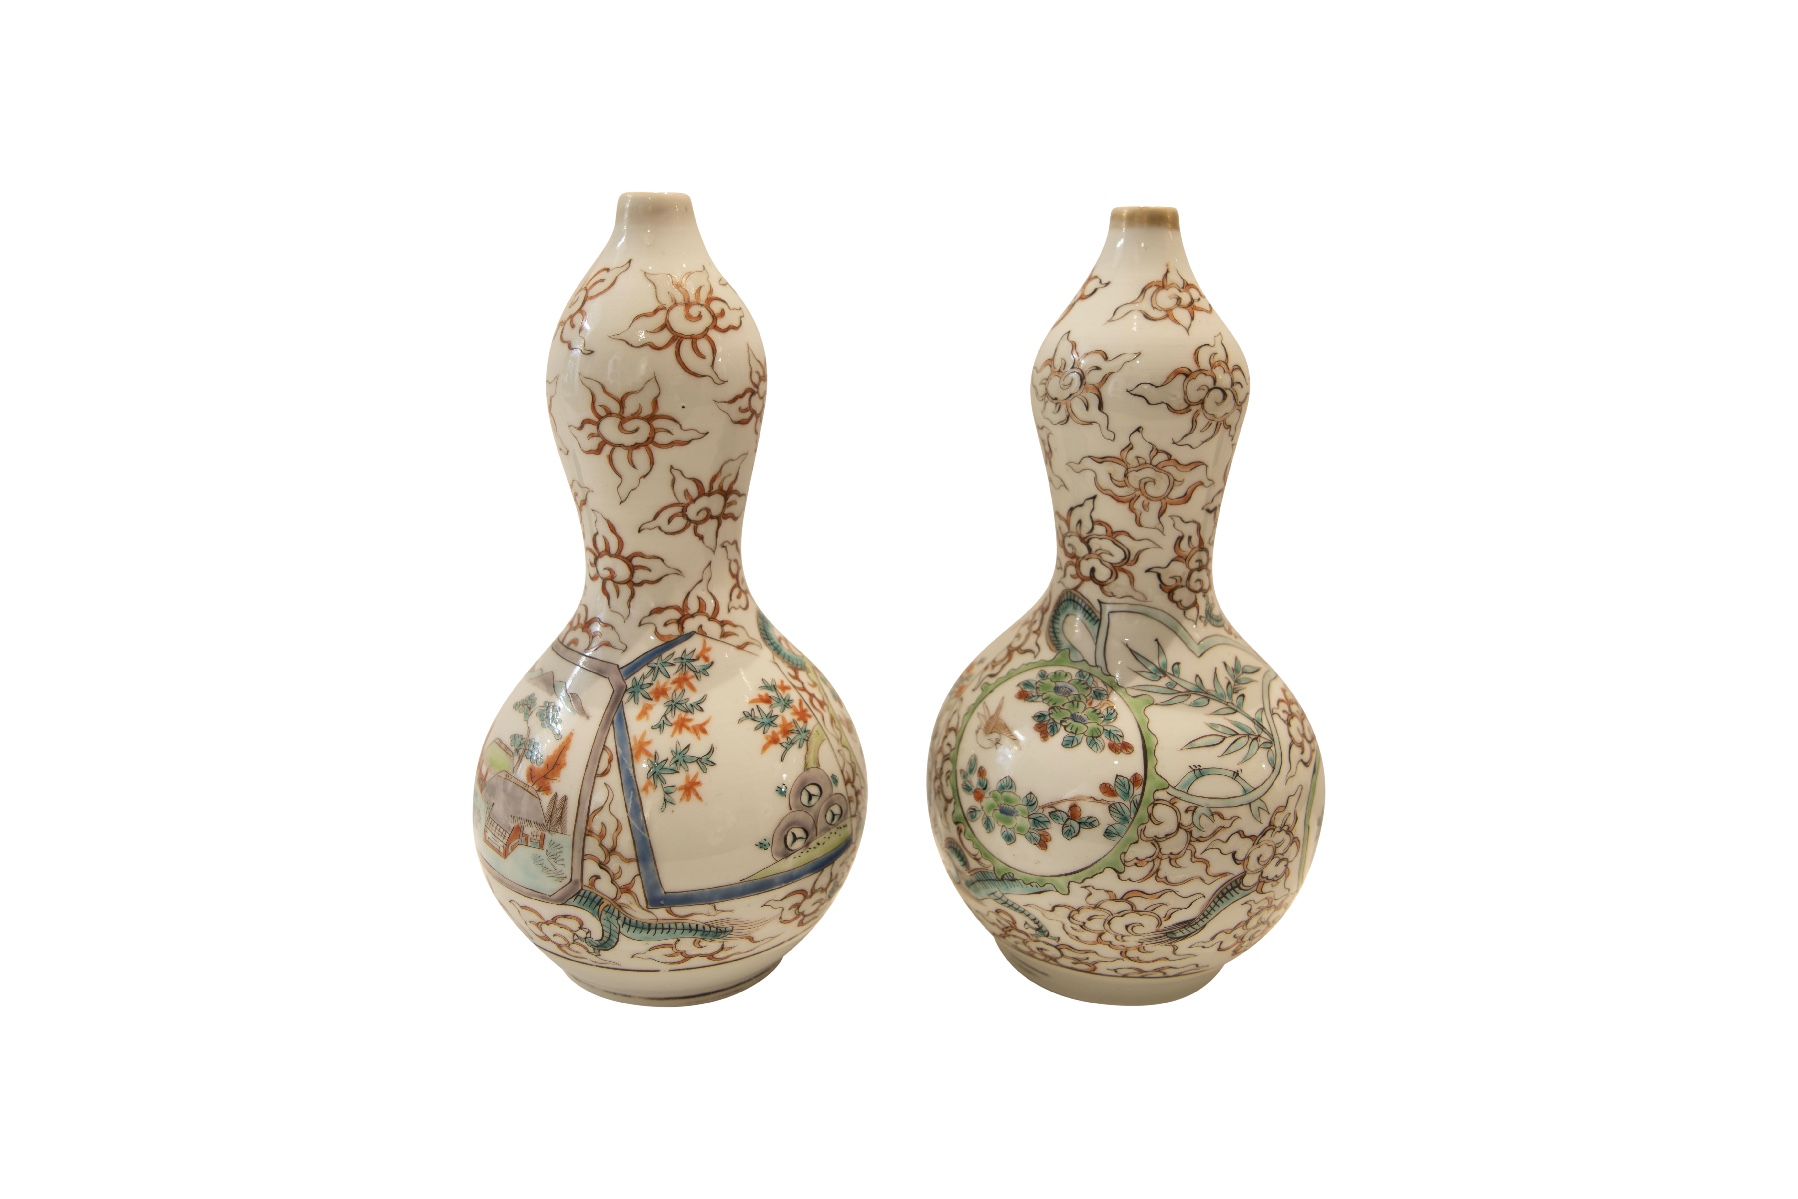 Zwei Asiatische Vasen | Two Asian vases - Image 3 of 5